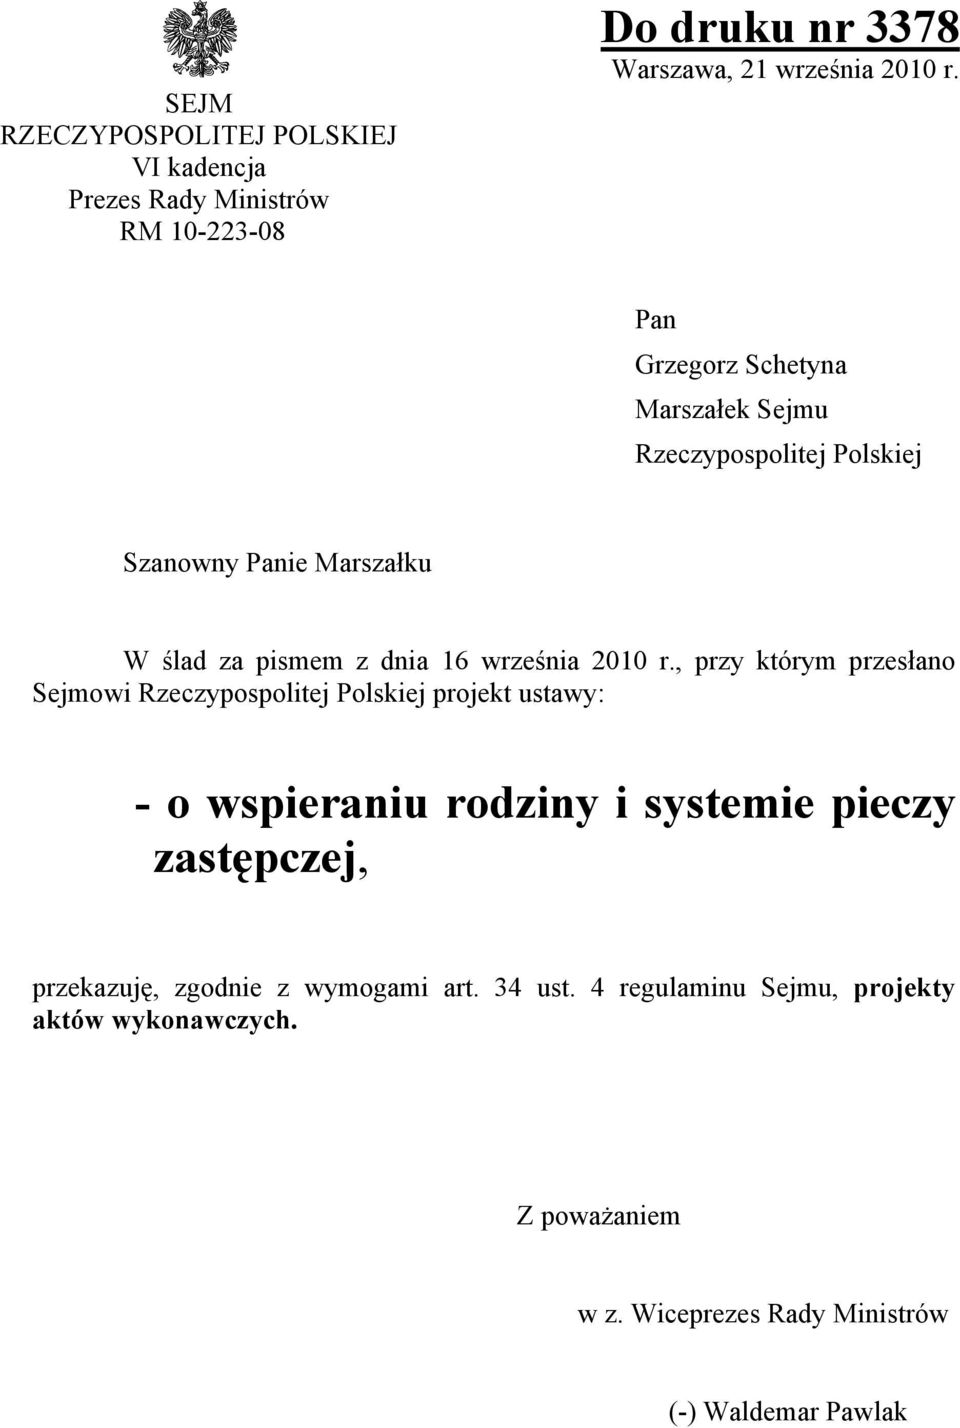 , przy którym przesłano Sejmowi Rzeczypospolitej Polskiej projekt ustawy: - o wspieraniu rodziny i systemie pieczy zastępczej,